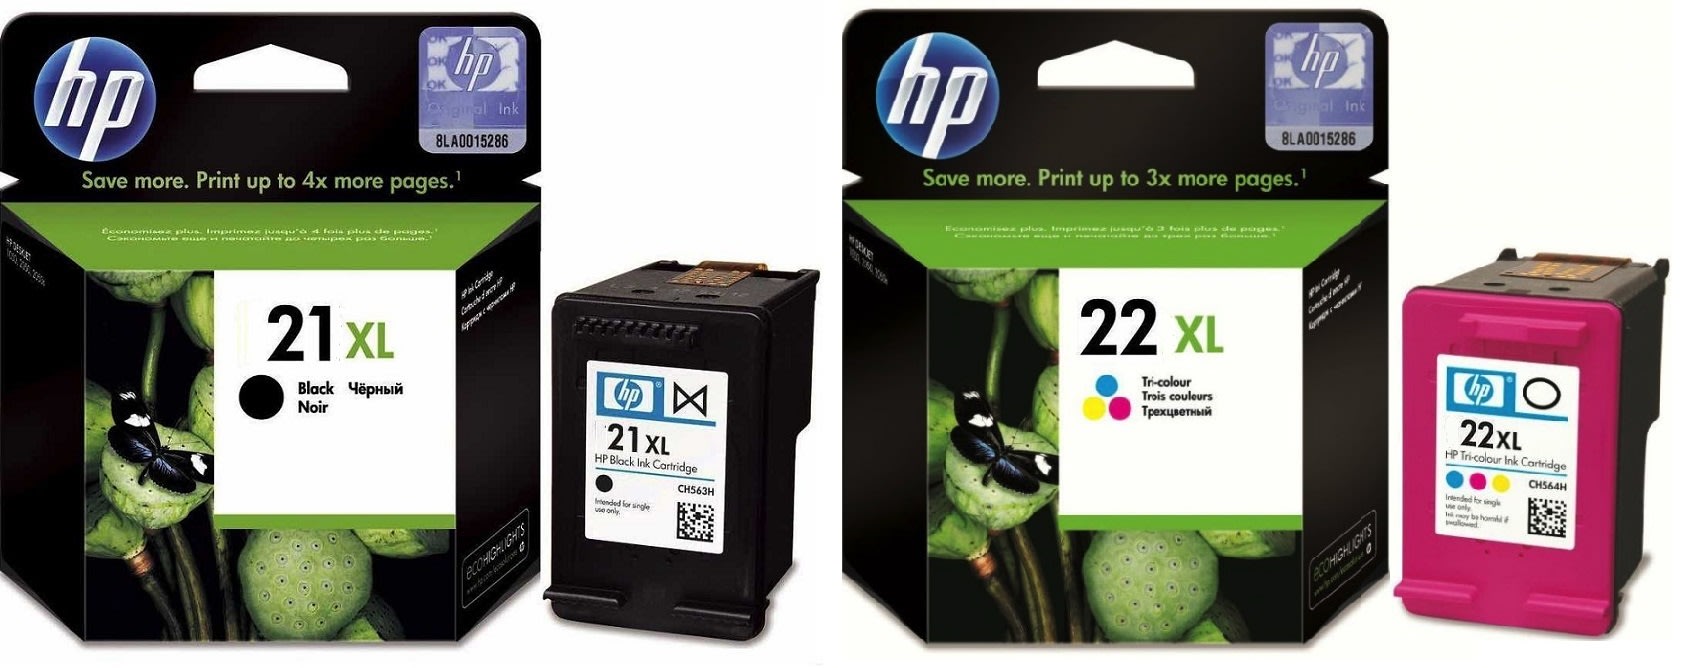 Картриджи hp 21XL 22XL для HP Deskjet D1360. Купить комплект оригинальных чернил.